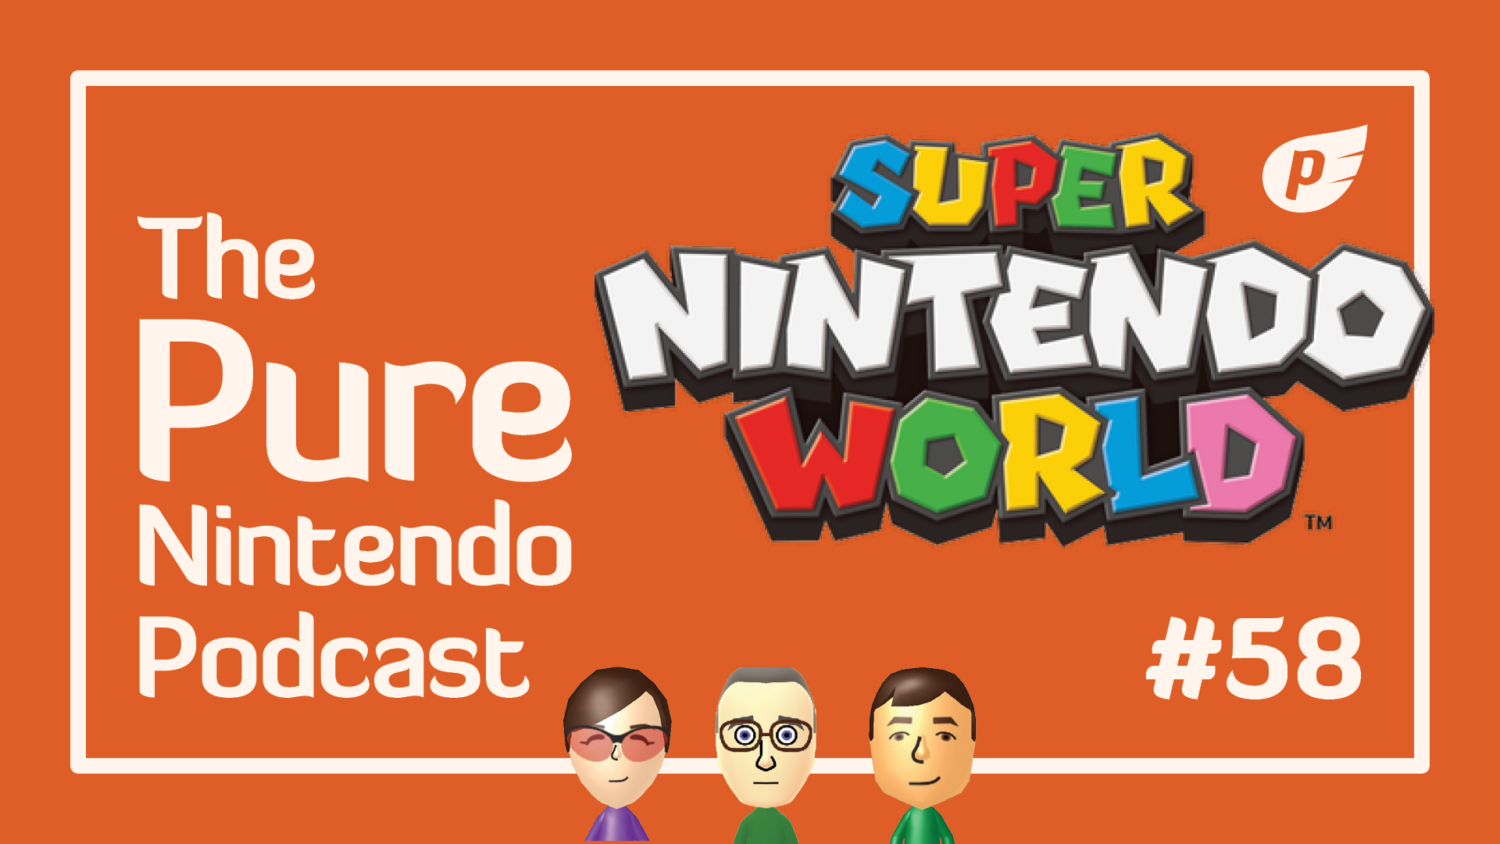 Pure Nintendo Podcast - E58 - Super Nintendo World